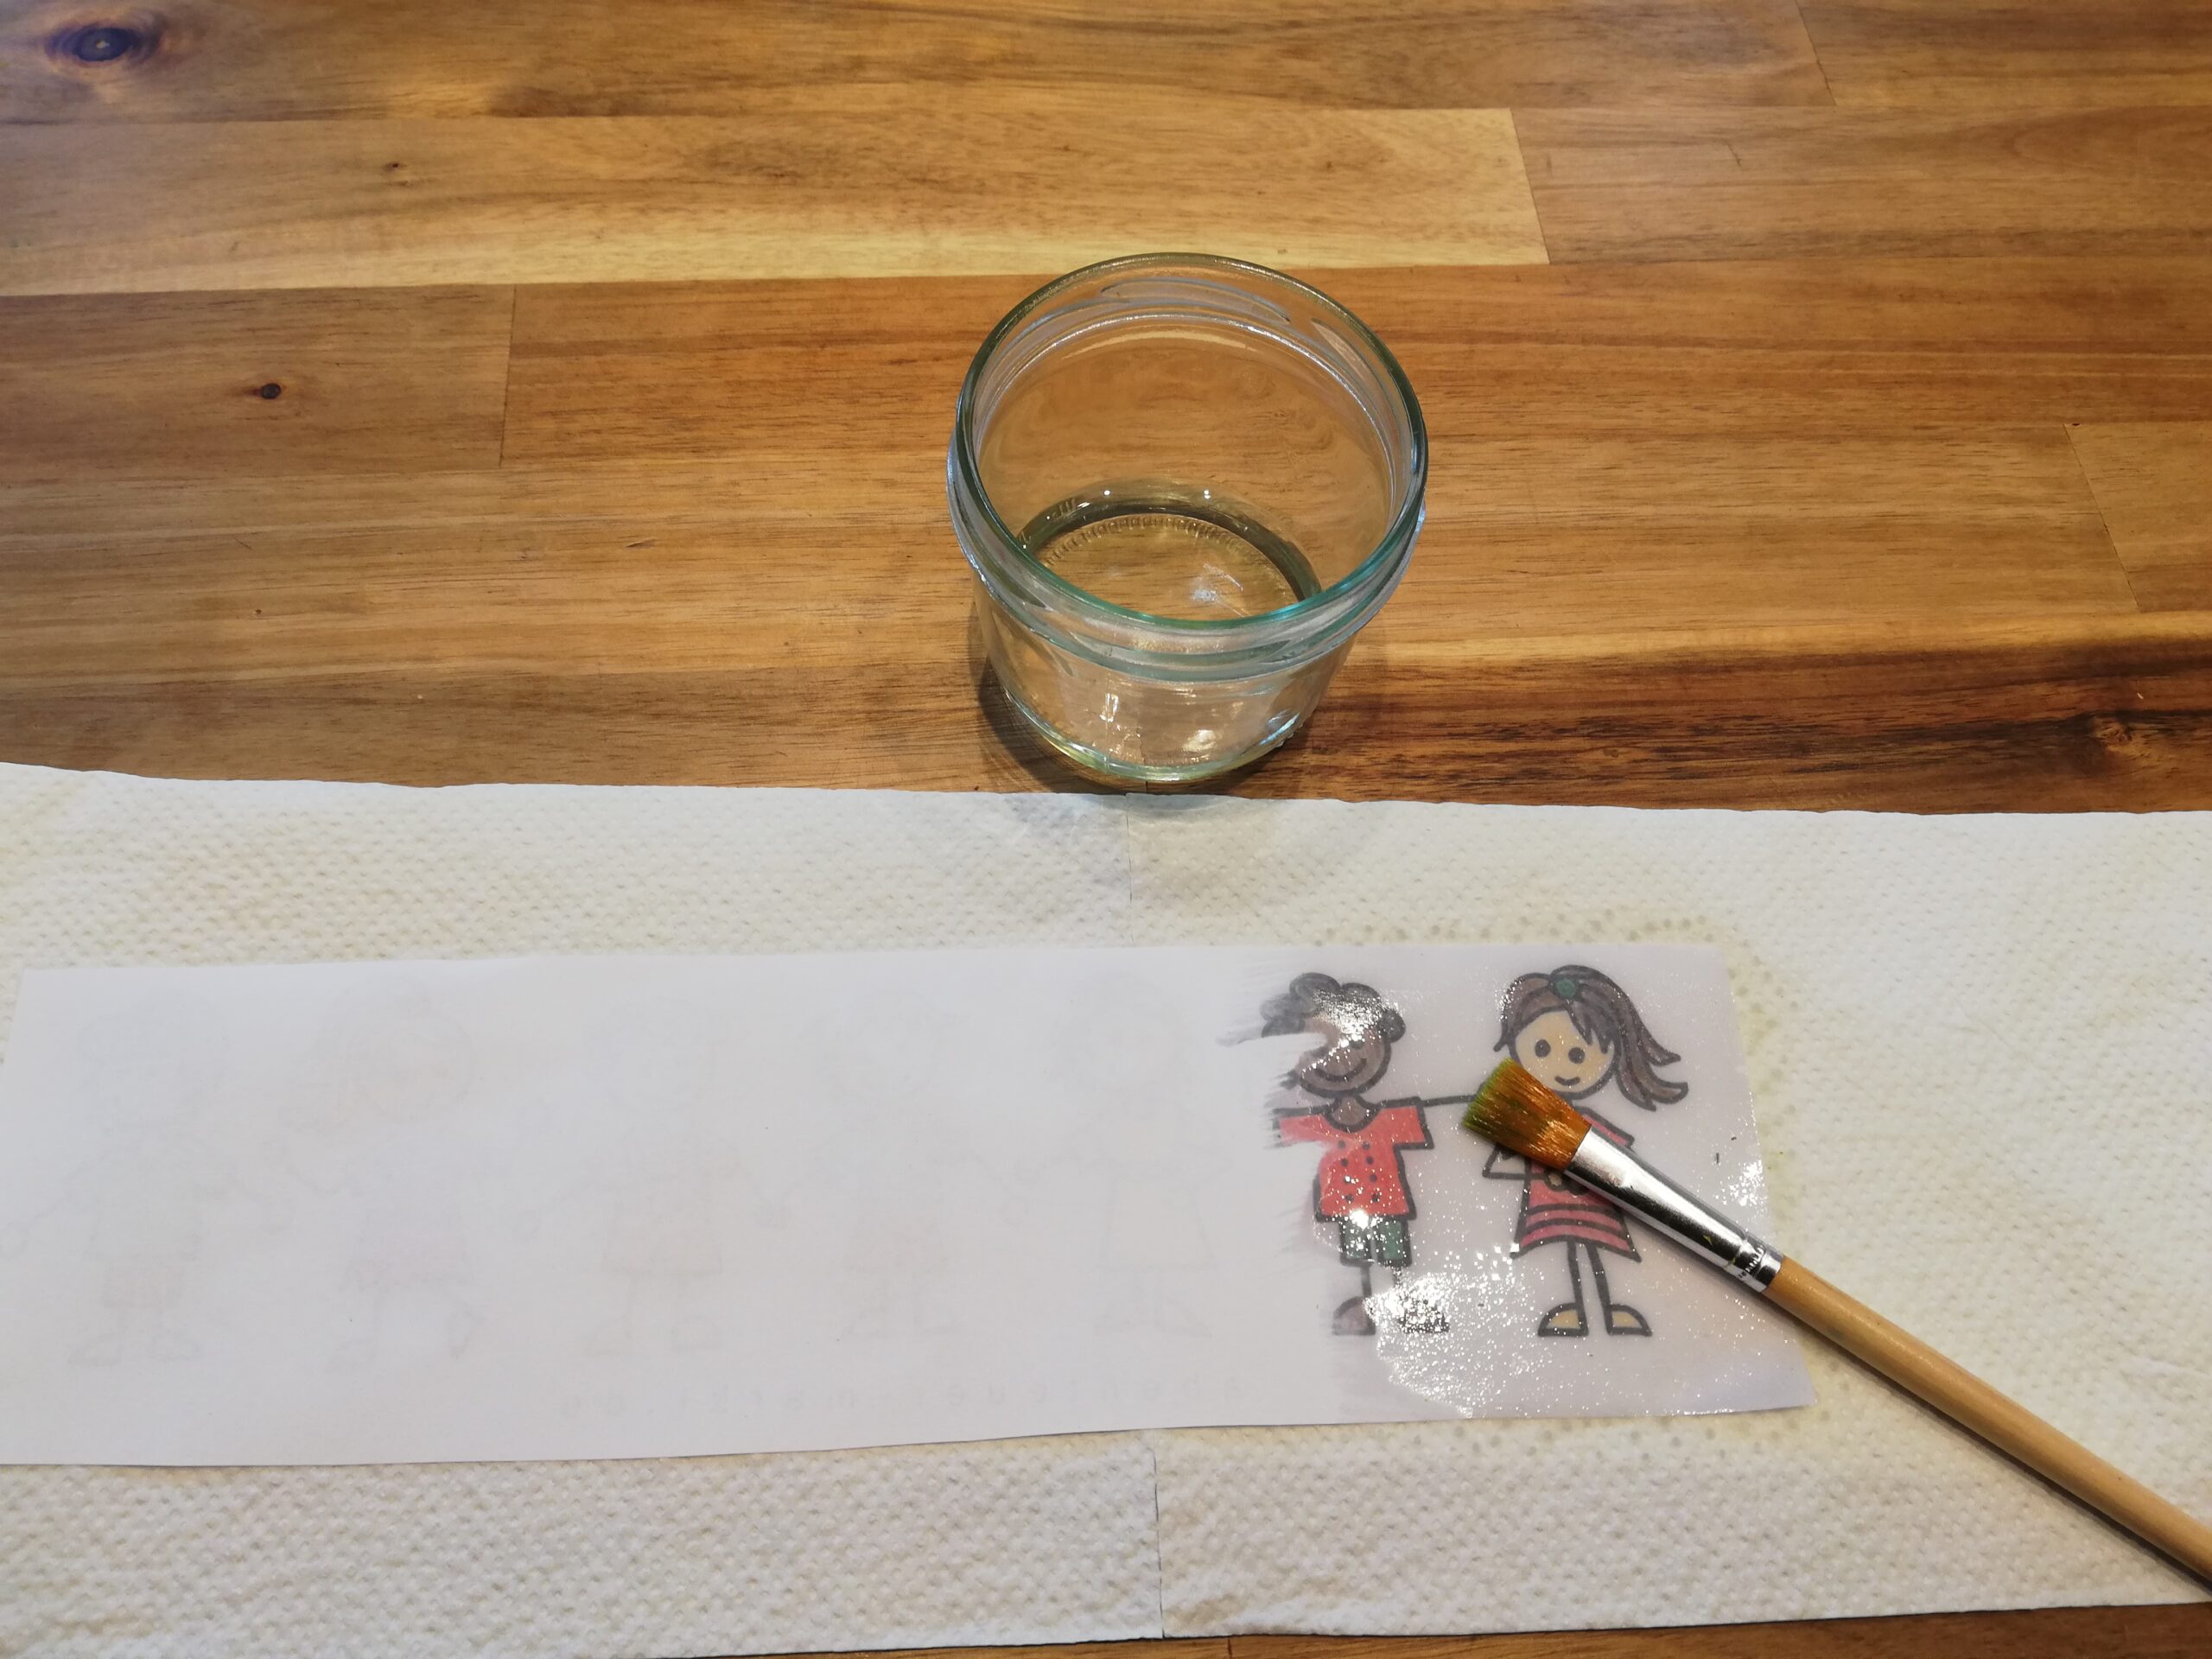 Bild zum Schritt 10 für das Bastel- und DIY-Abenteuer für Kinder: '[Eltern]Mit dem Pinsel streicht ihr nun das Öl auf das...'